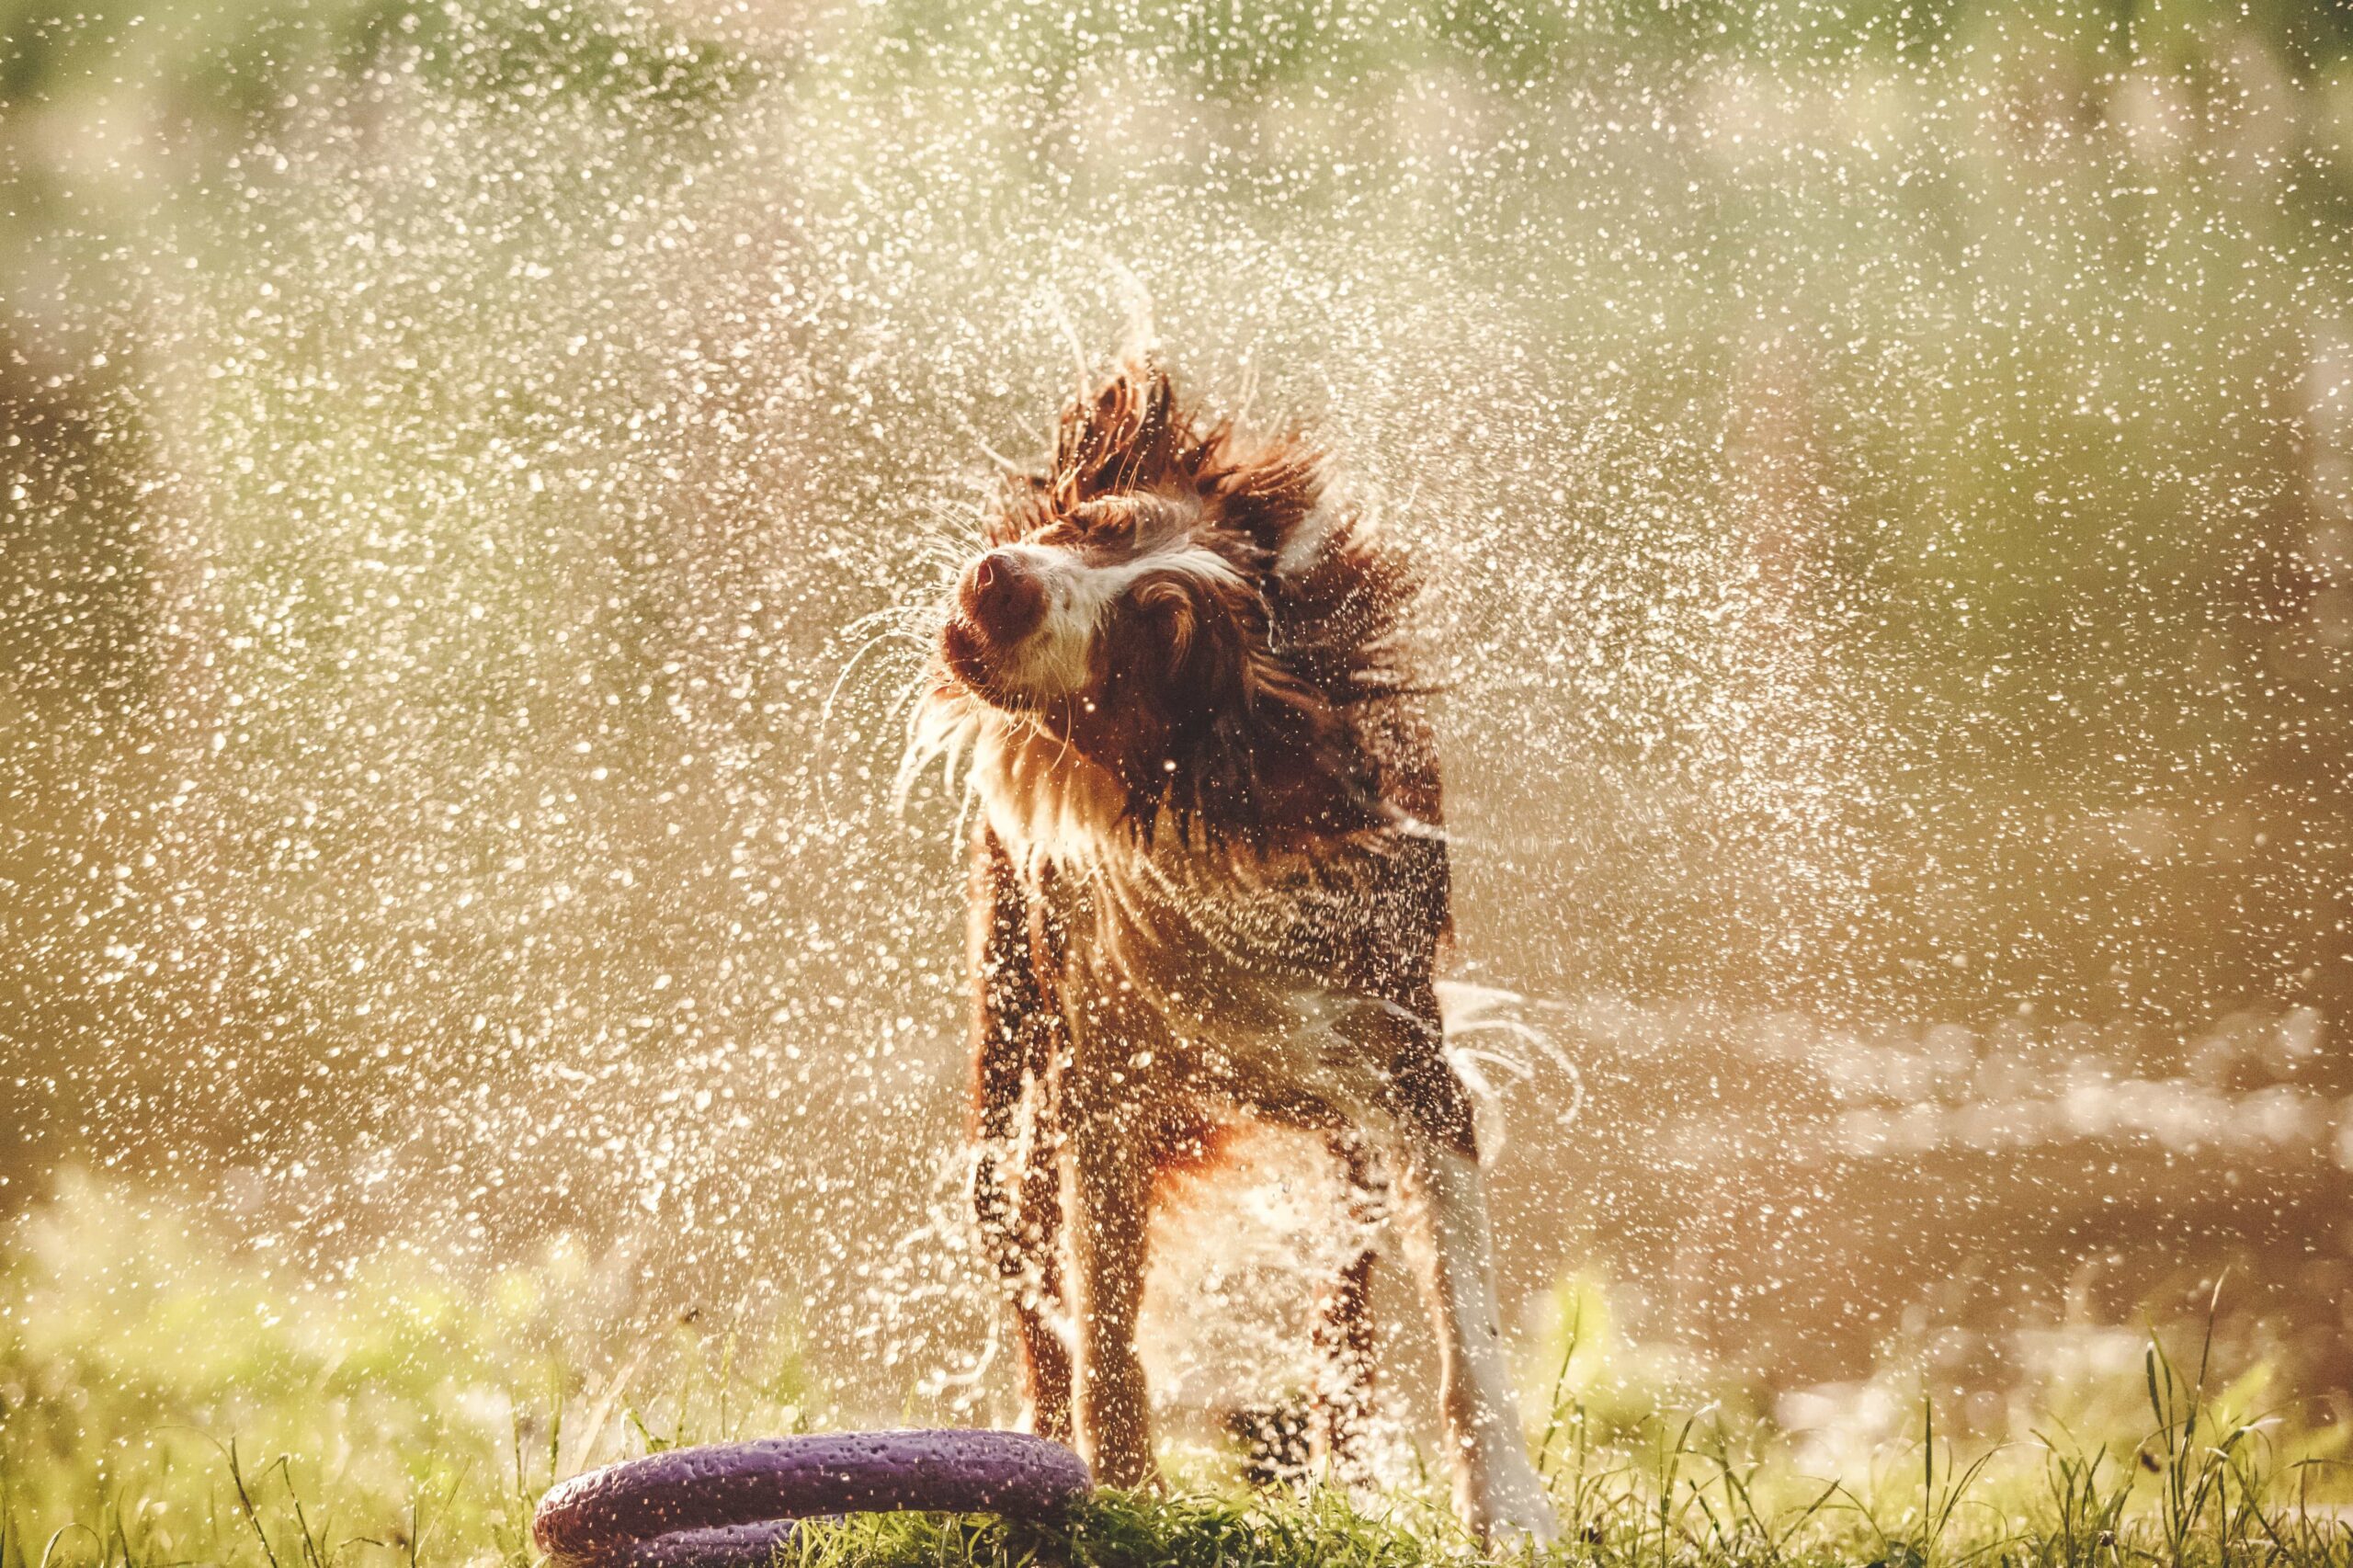 Hidratação e alimentação úmida são opções para amenizar o calor dos pets